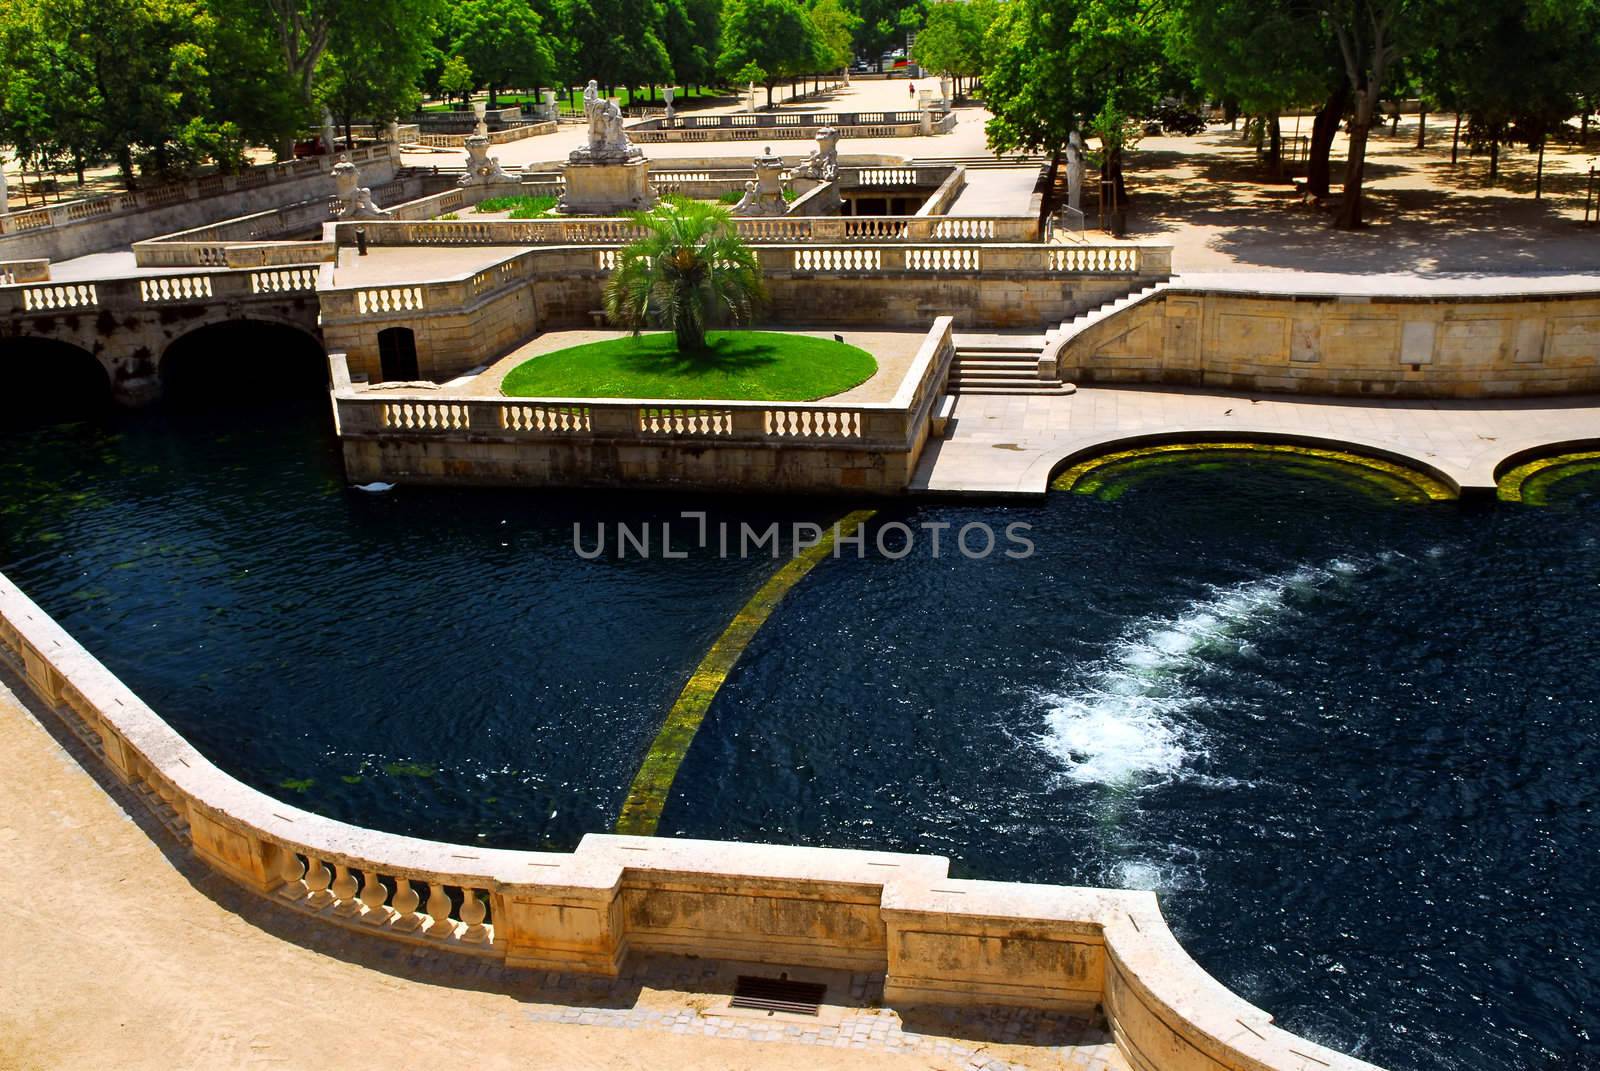 Park Jardin de la Fontaine in city of Nimes in southern France